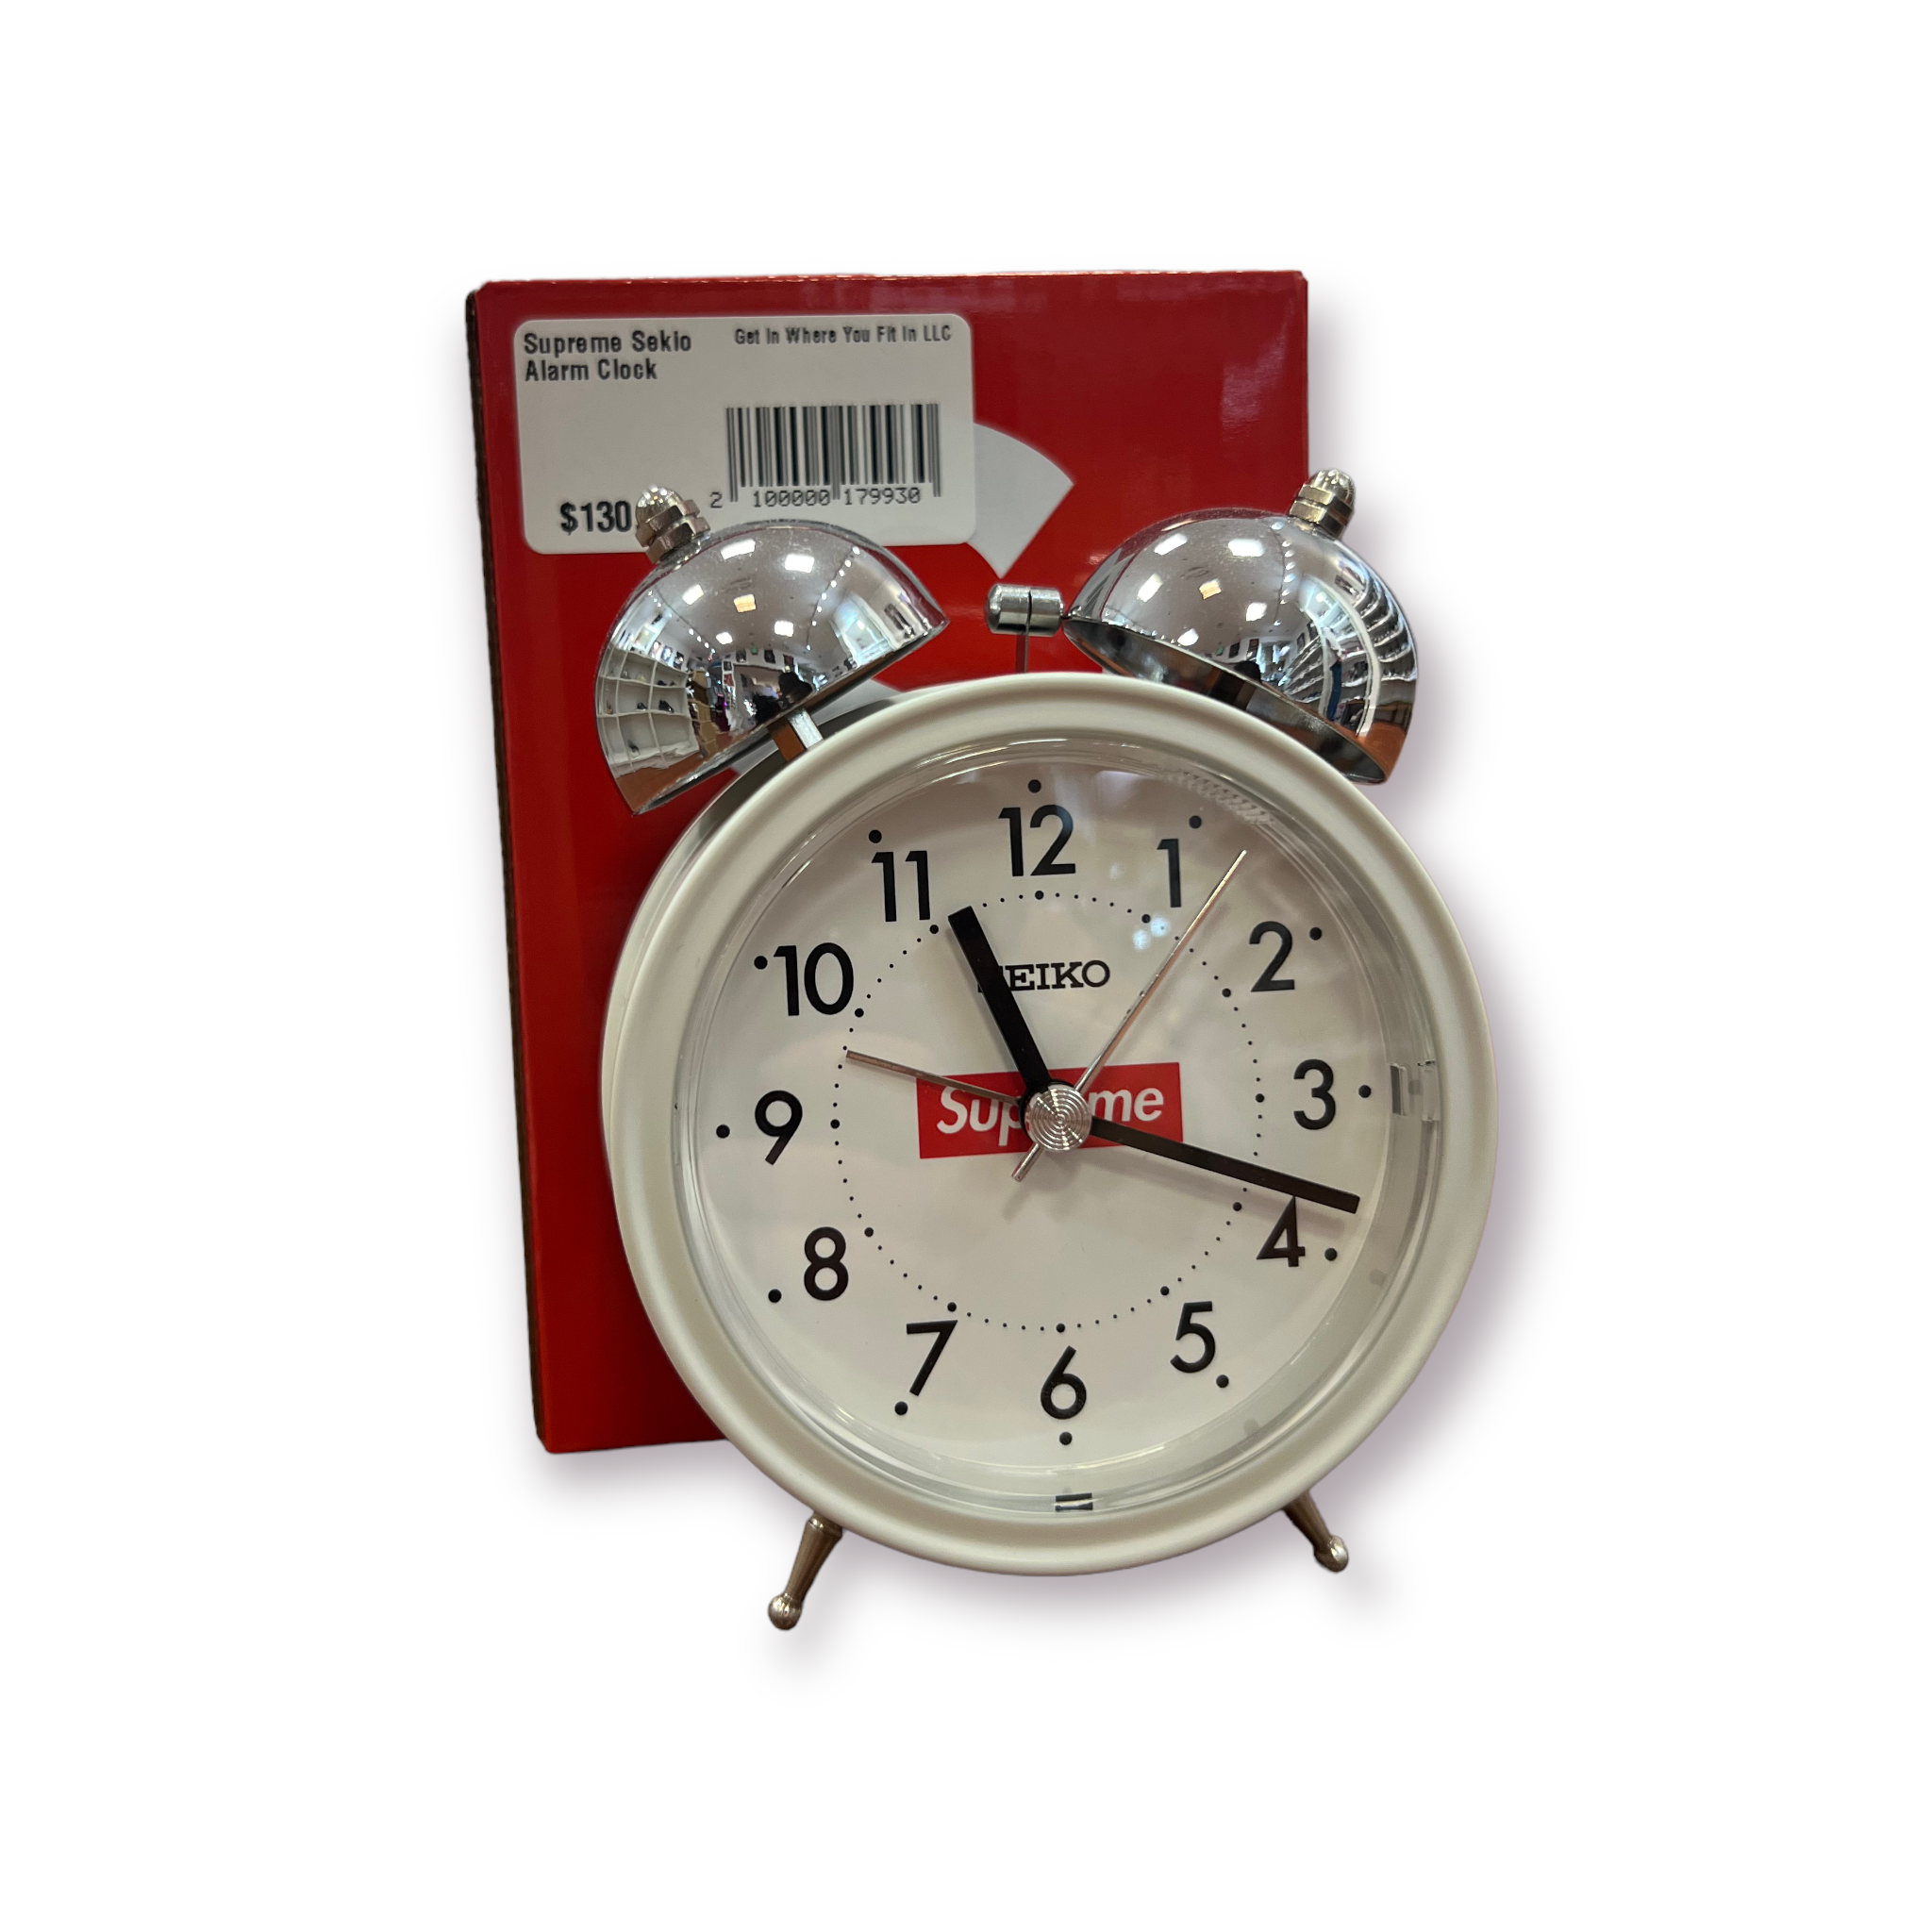 Supreme Seiko Alarm Clock-